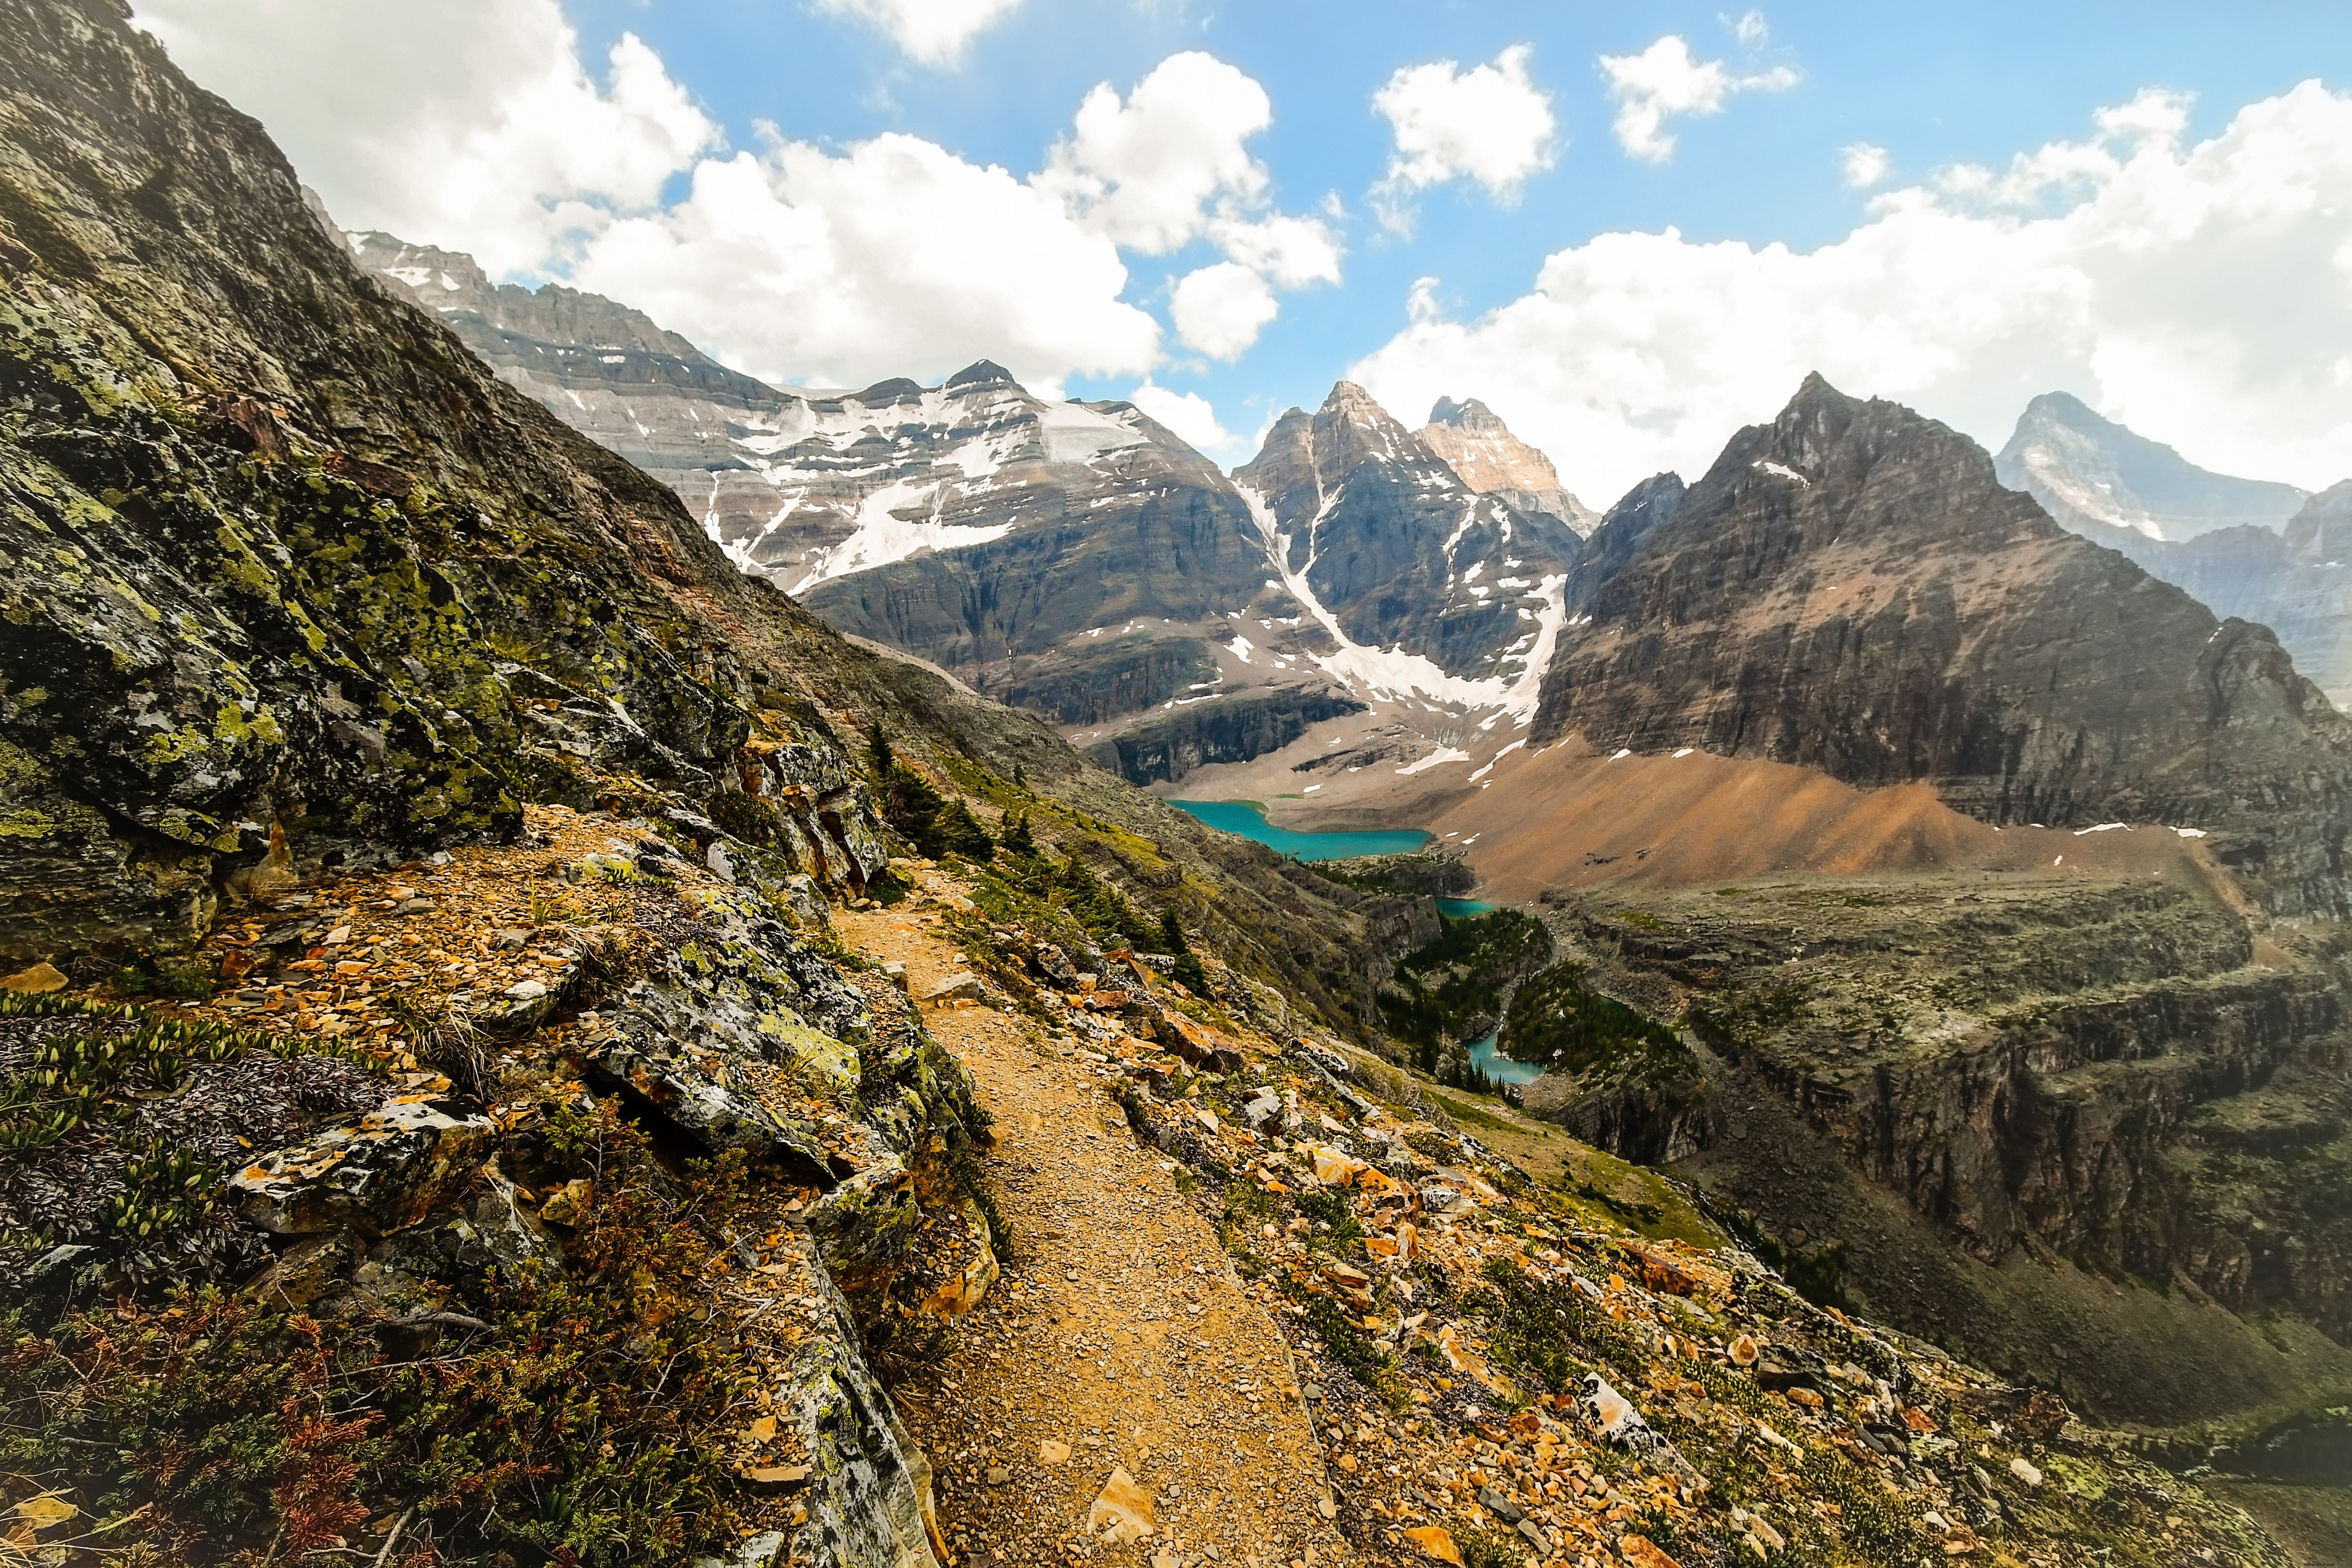 Caminho da montanha rochosa que leva a um lago em um vale.